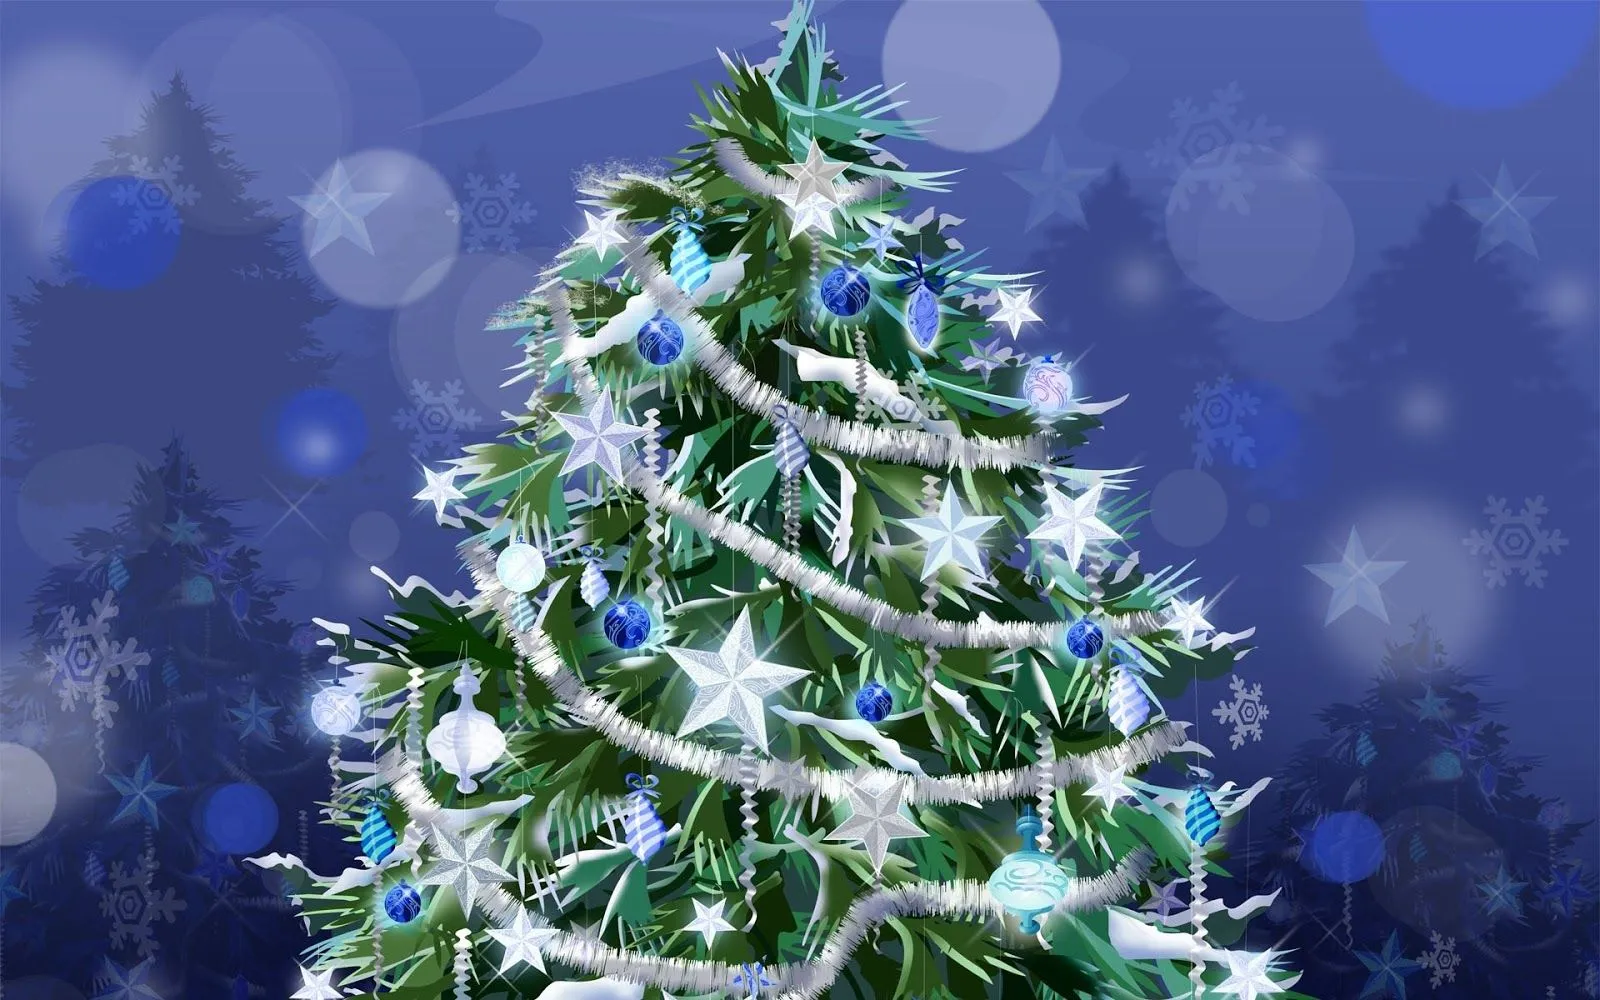 wallpapernarium: Un bello árbol de navidad totalmente decorado